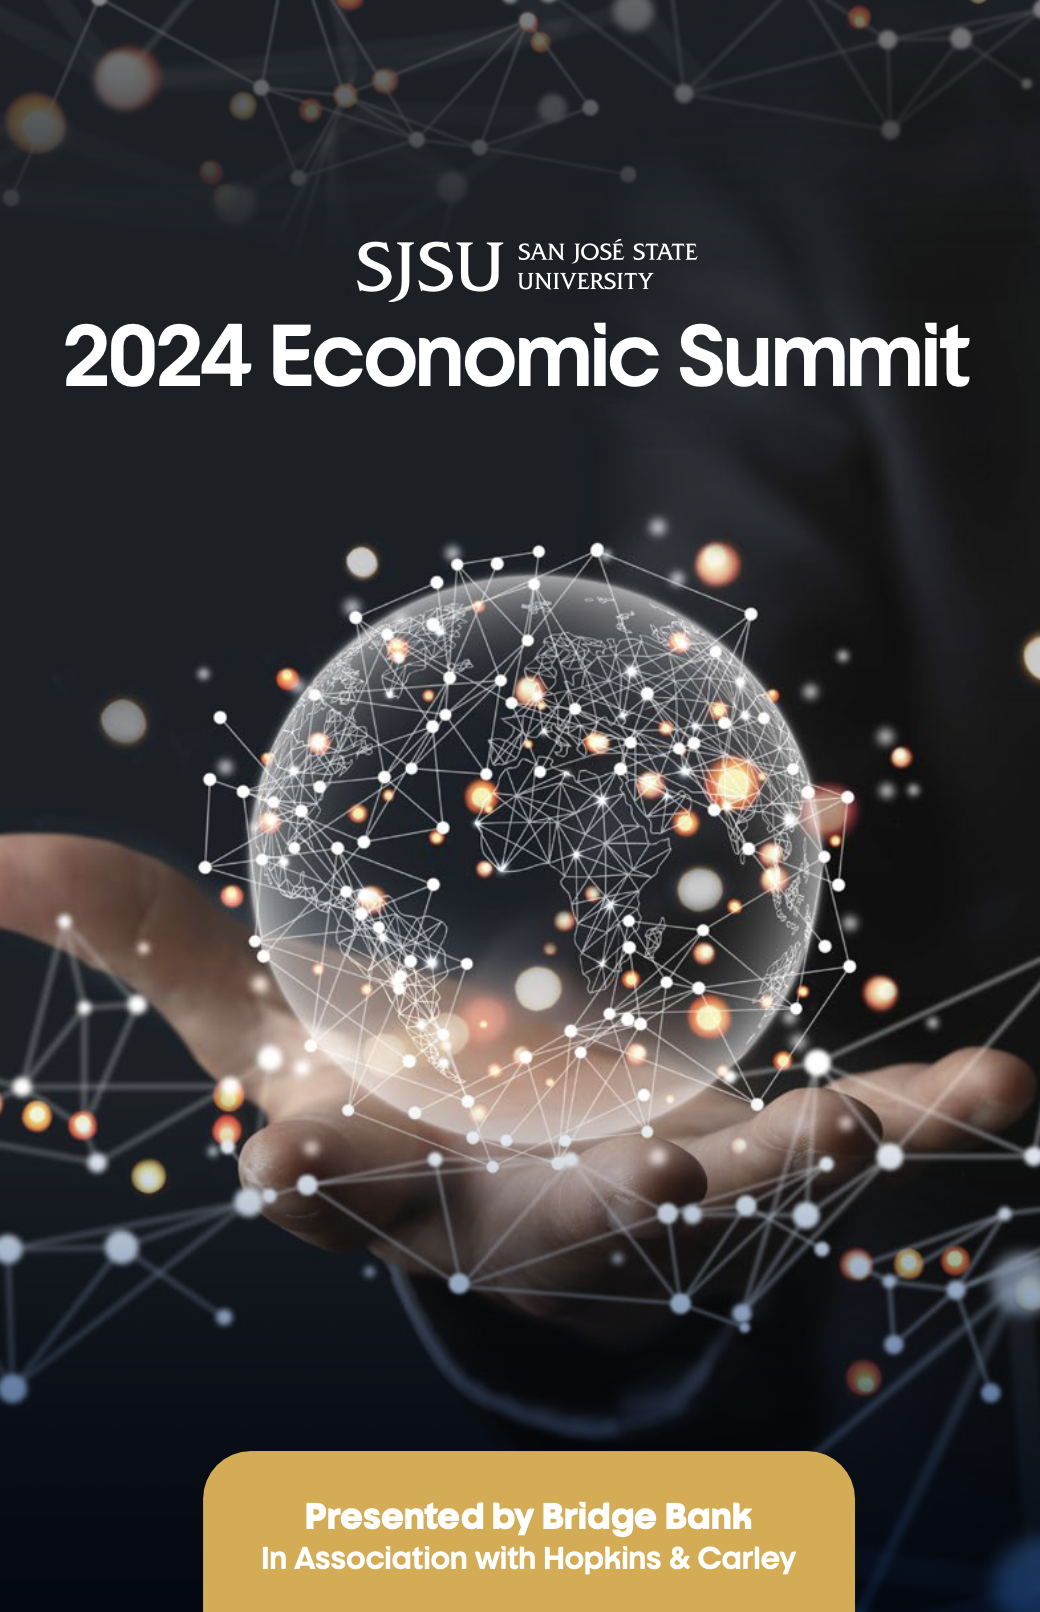 Economic Summit 2024 Program